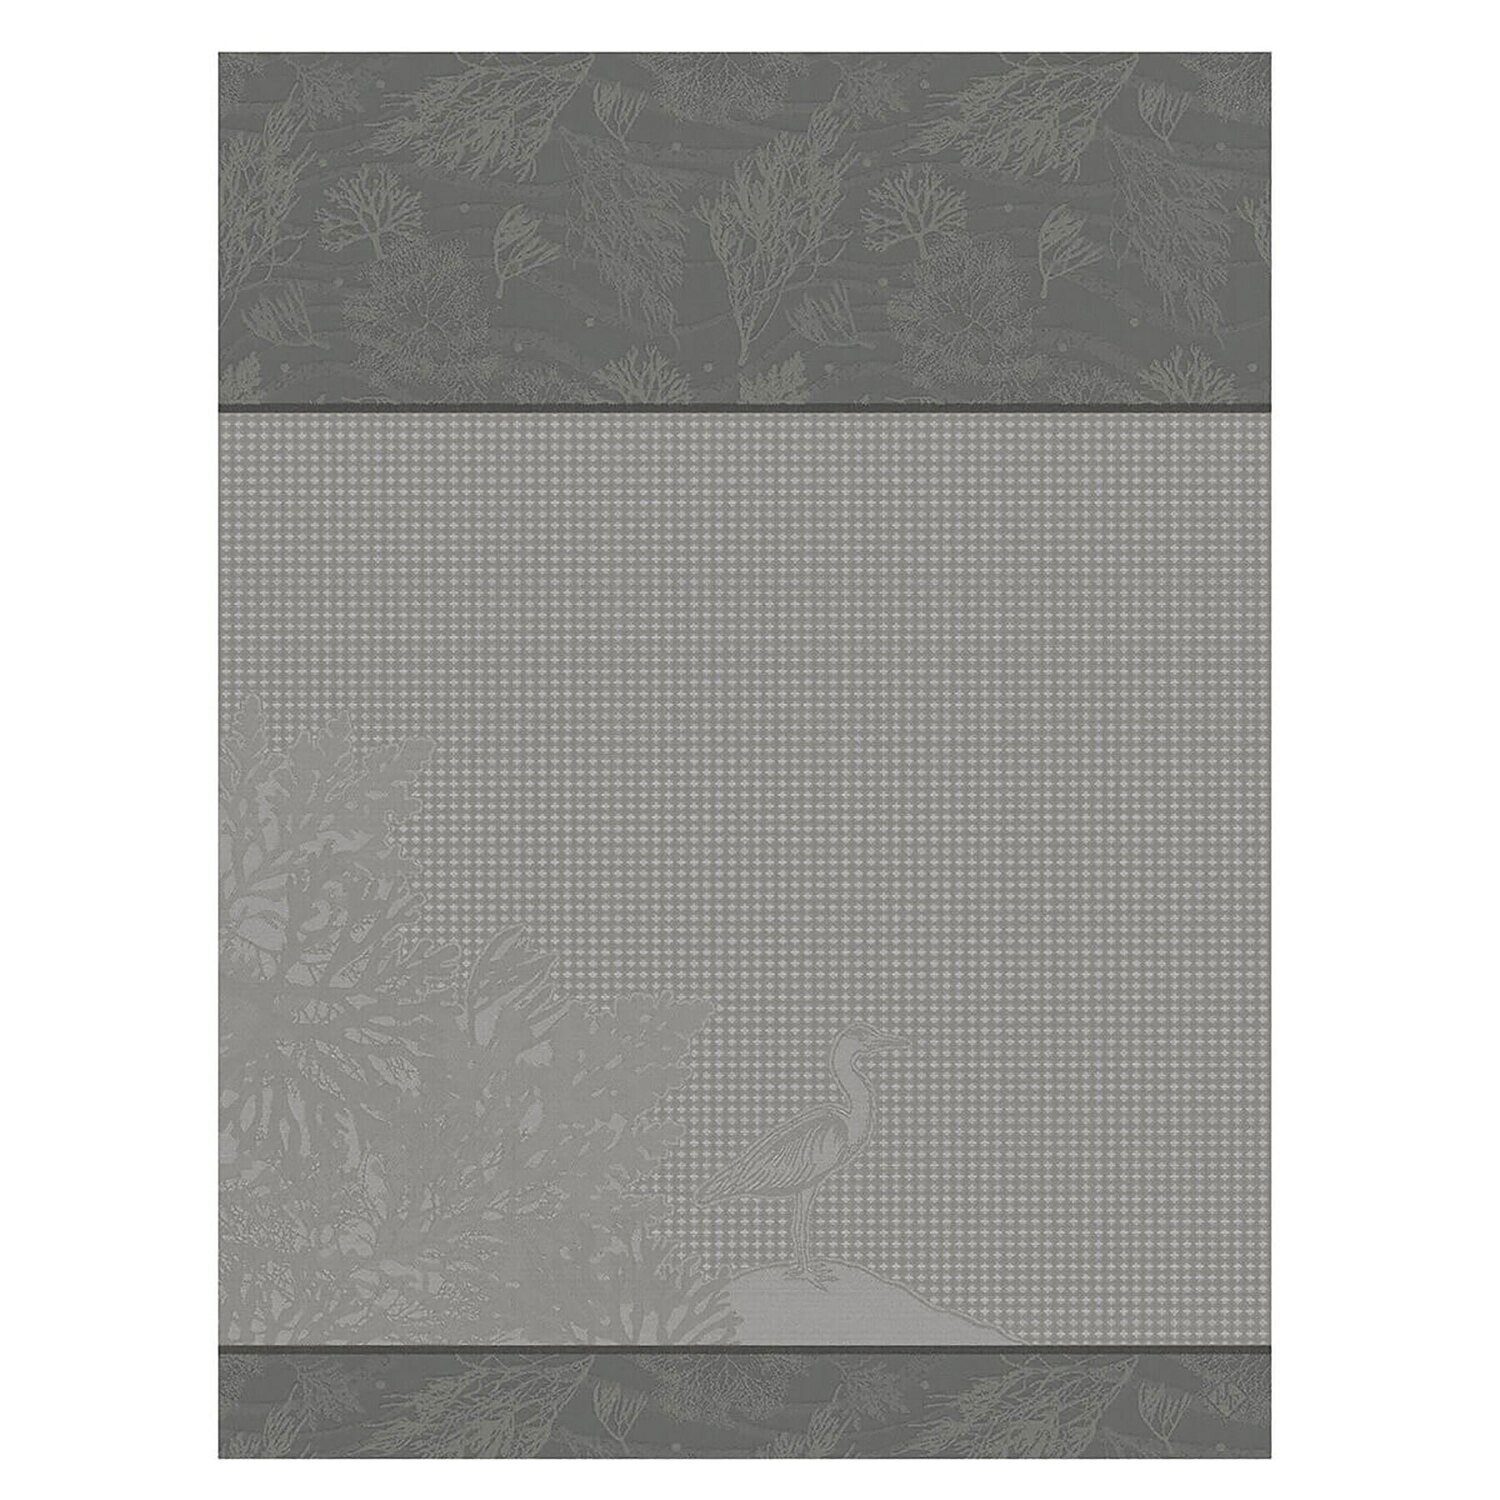 Le Jacquard Francais Hand Towel Marais Salants Grey 100% Cotton 26807 Set of 4